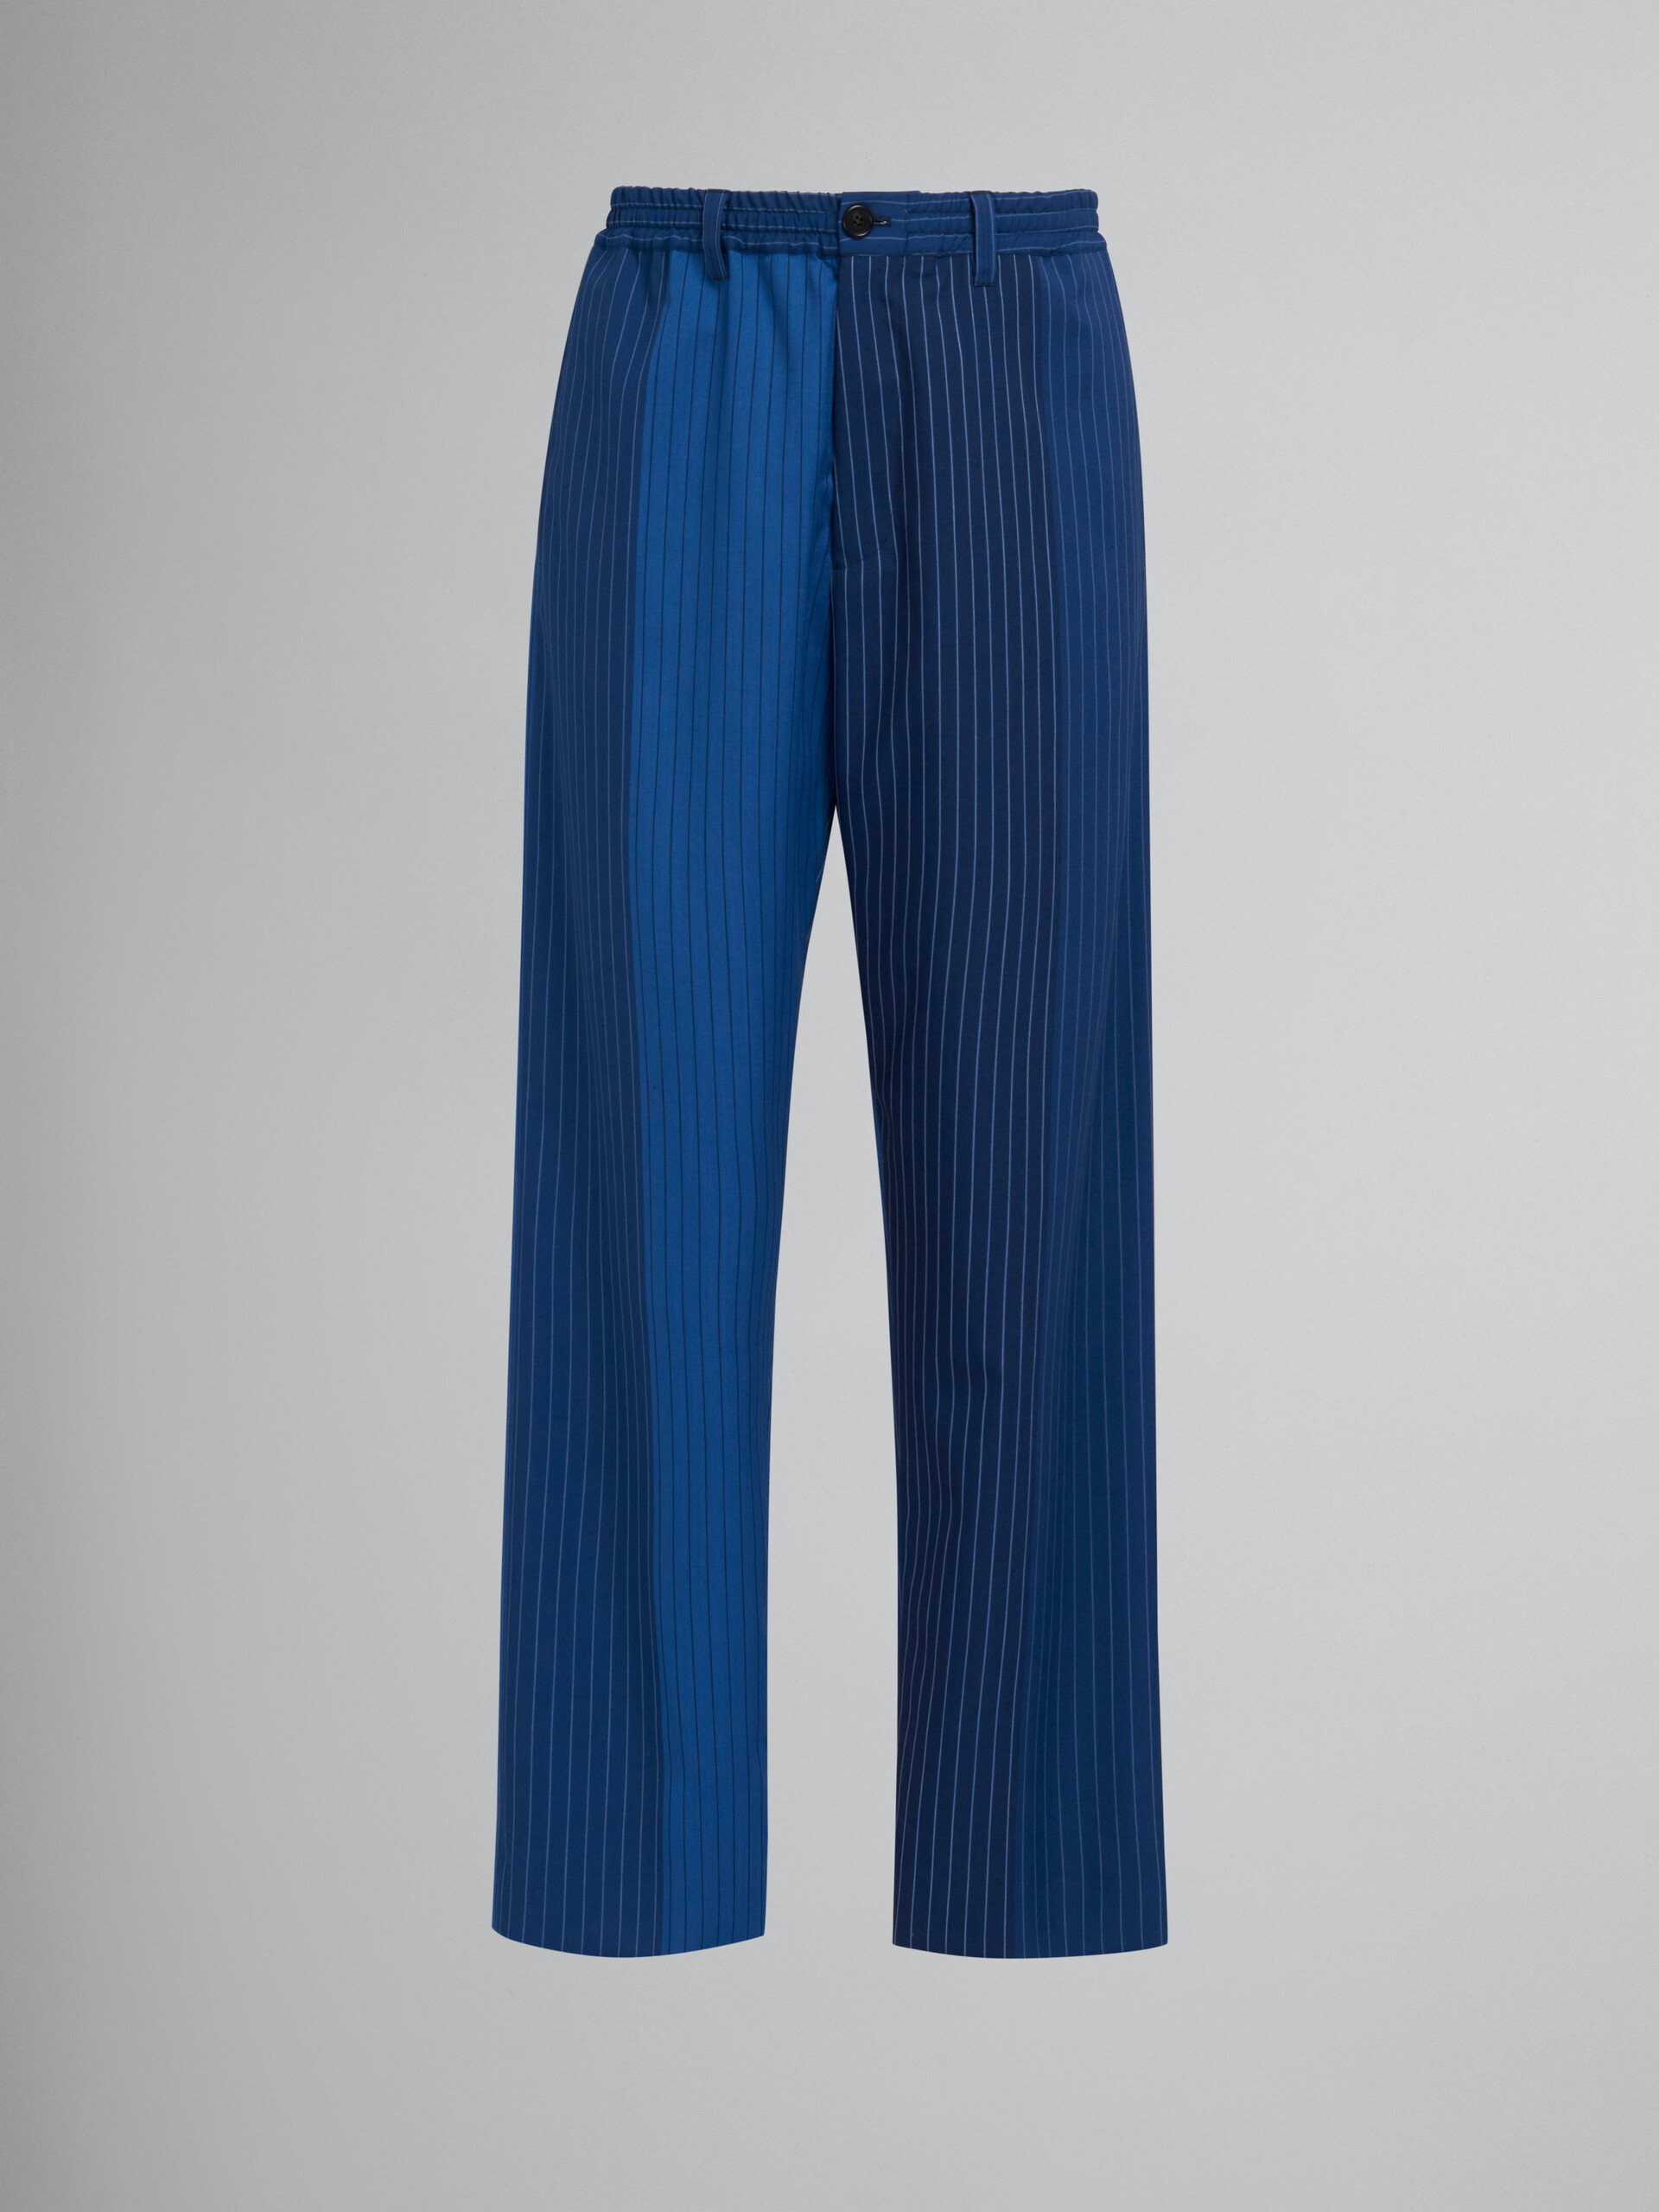 Pantalon de survêtement à fines rayures avec dégradé bleu - Pantalons - Image 1